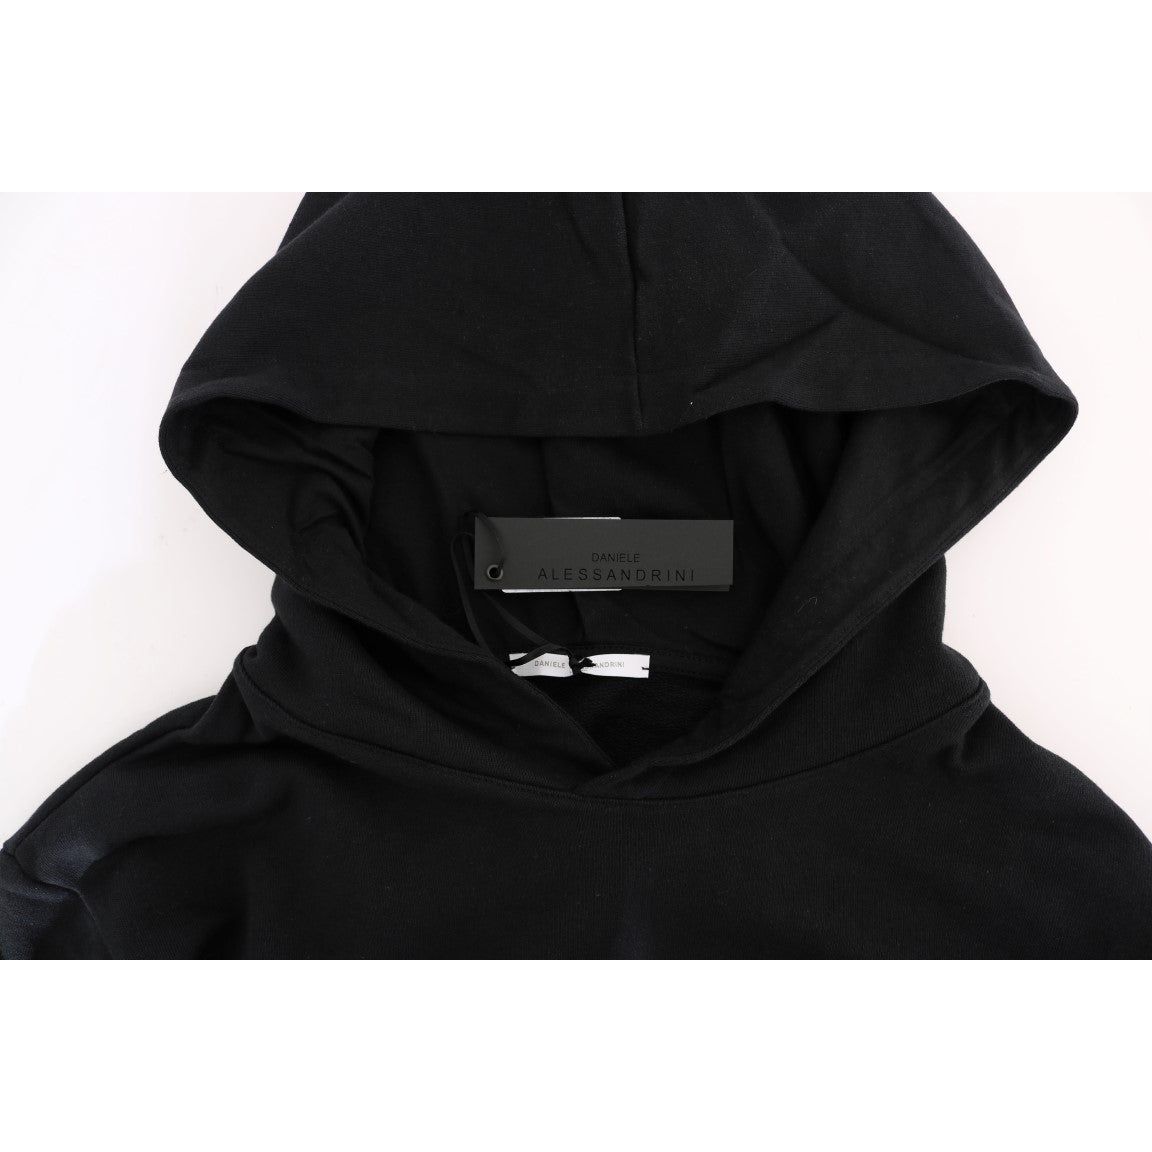 Daniele Alessandrini Elegant Black Cotton Hooded Sweater black-gym-casual-hooded-cotton-sweater 457508-black-gym-casual-hooded-cotton-sweater-4.jpg